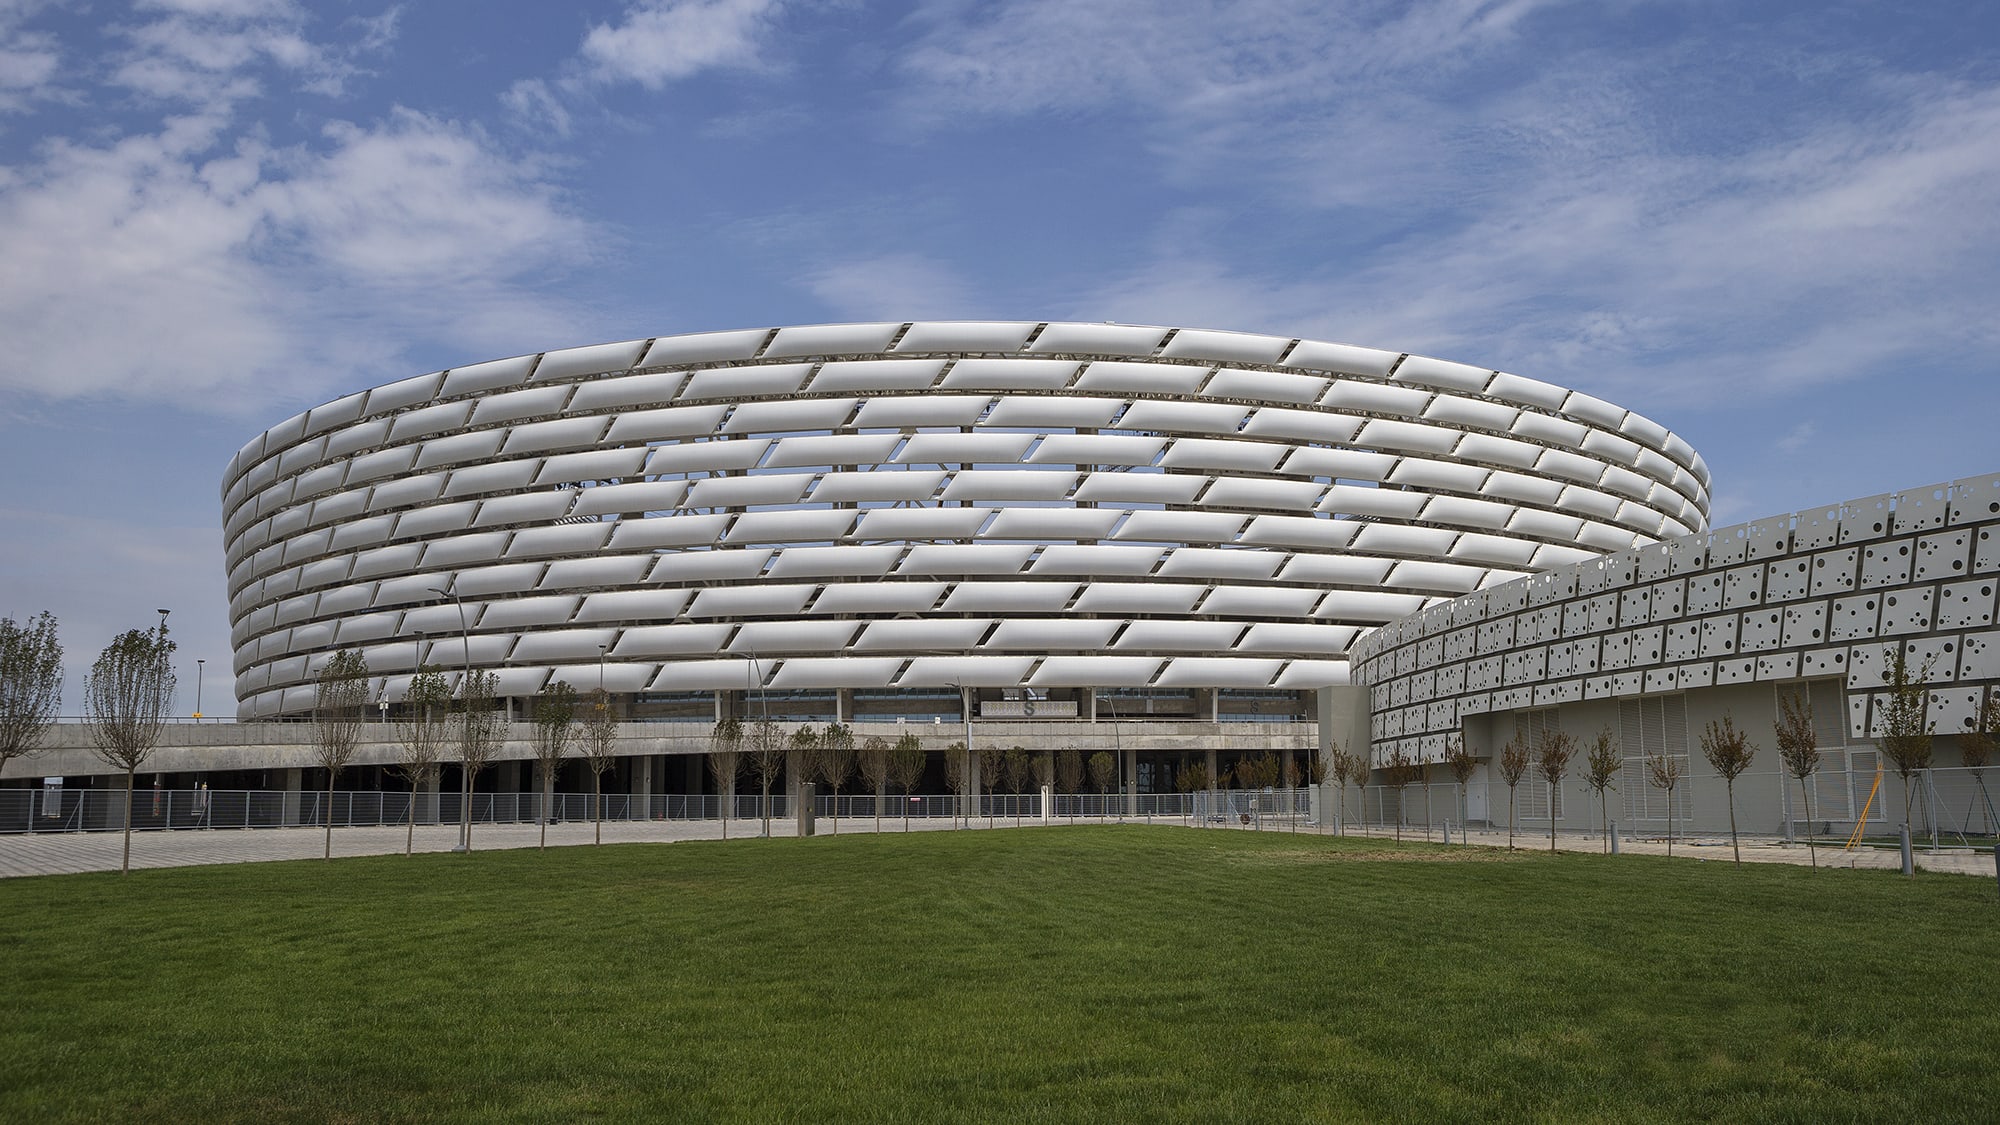 Stadien der EURO 2020: Baku - UEFA Euro 2020 ...